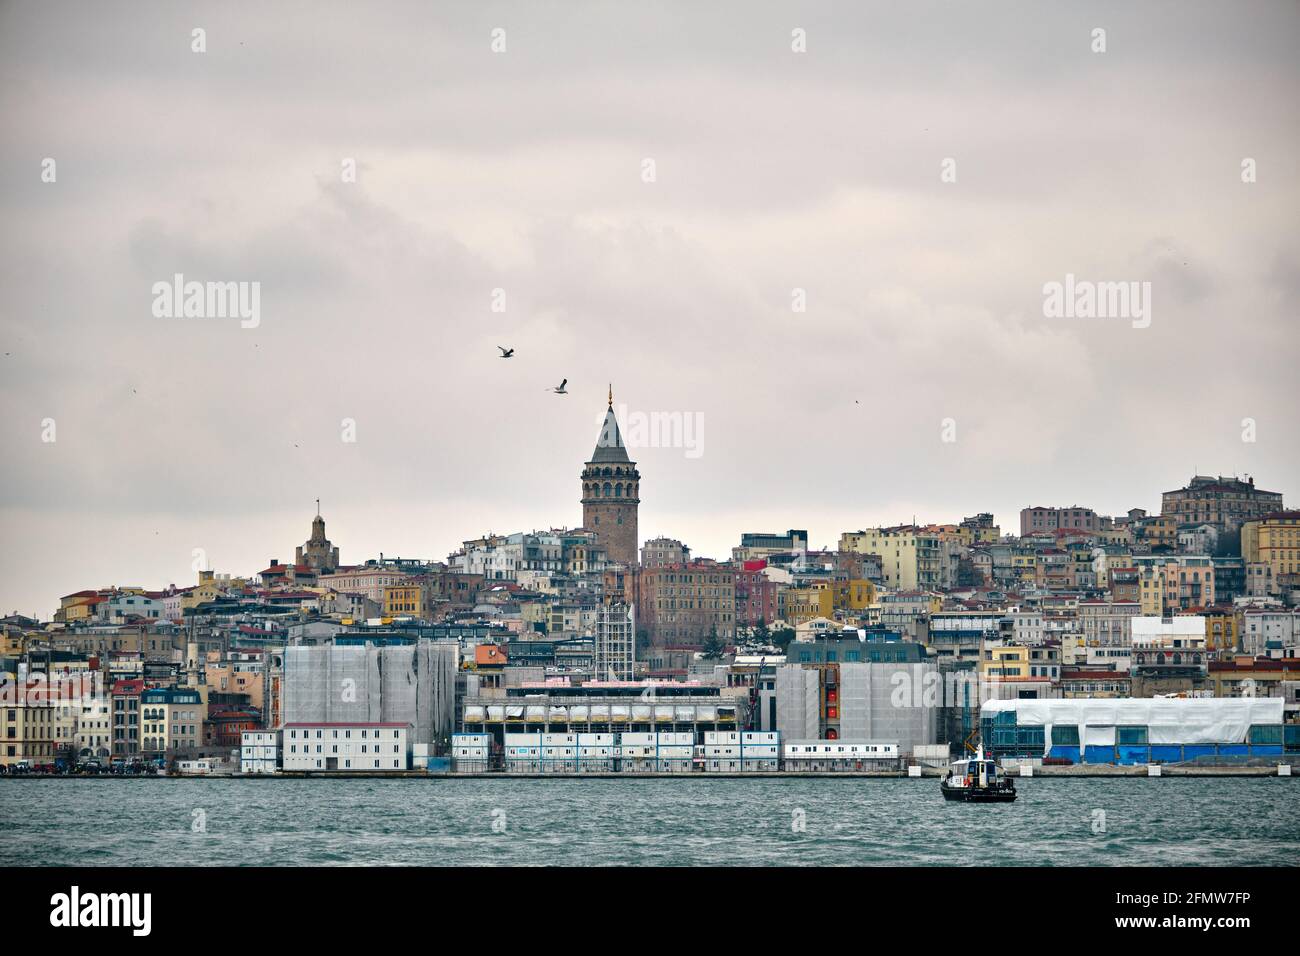 Der berühmte galata-Turm von istanbul wurde von istanbul bosporus fotografiert. Er wurde von genuesischen Matrosen für die Beobachtung des bosporus von konstantinopel errichtet Stockfoto